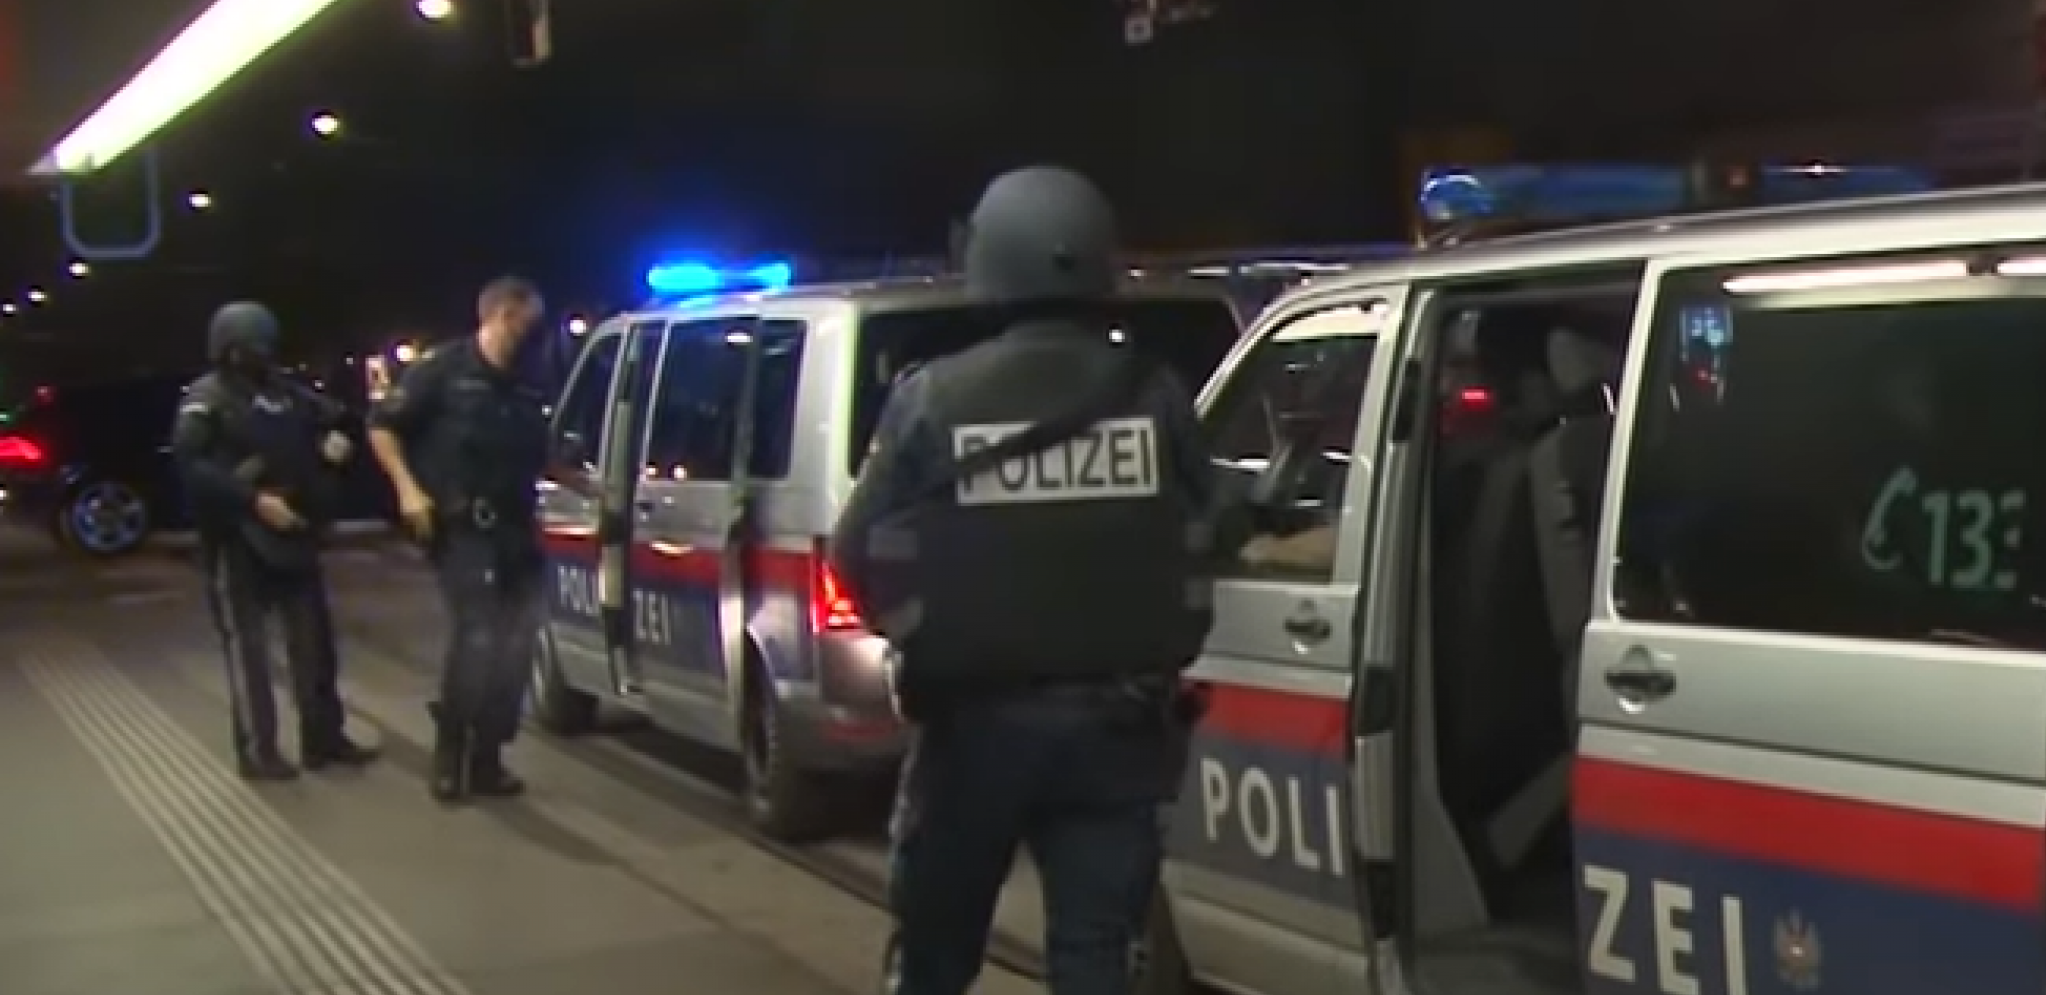 PIJAN NOKAUTIRAO POLICAJKU TOKOM SVAĐE S BIVŠOM DEVOJKOM Srbin uhapšen u Beču zbog brutalnog nasilja!